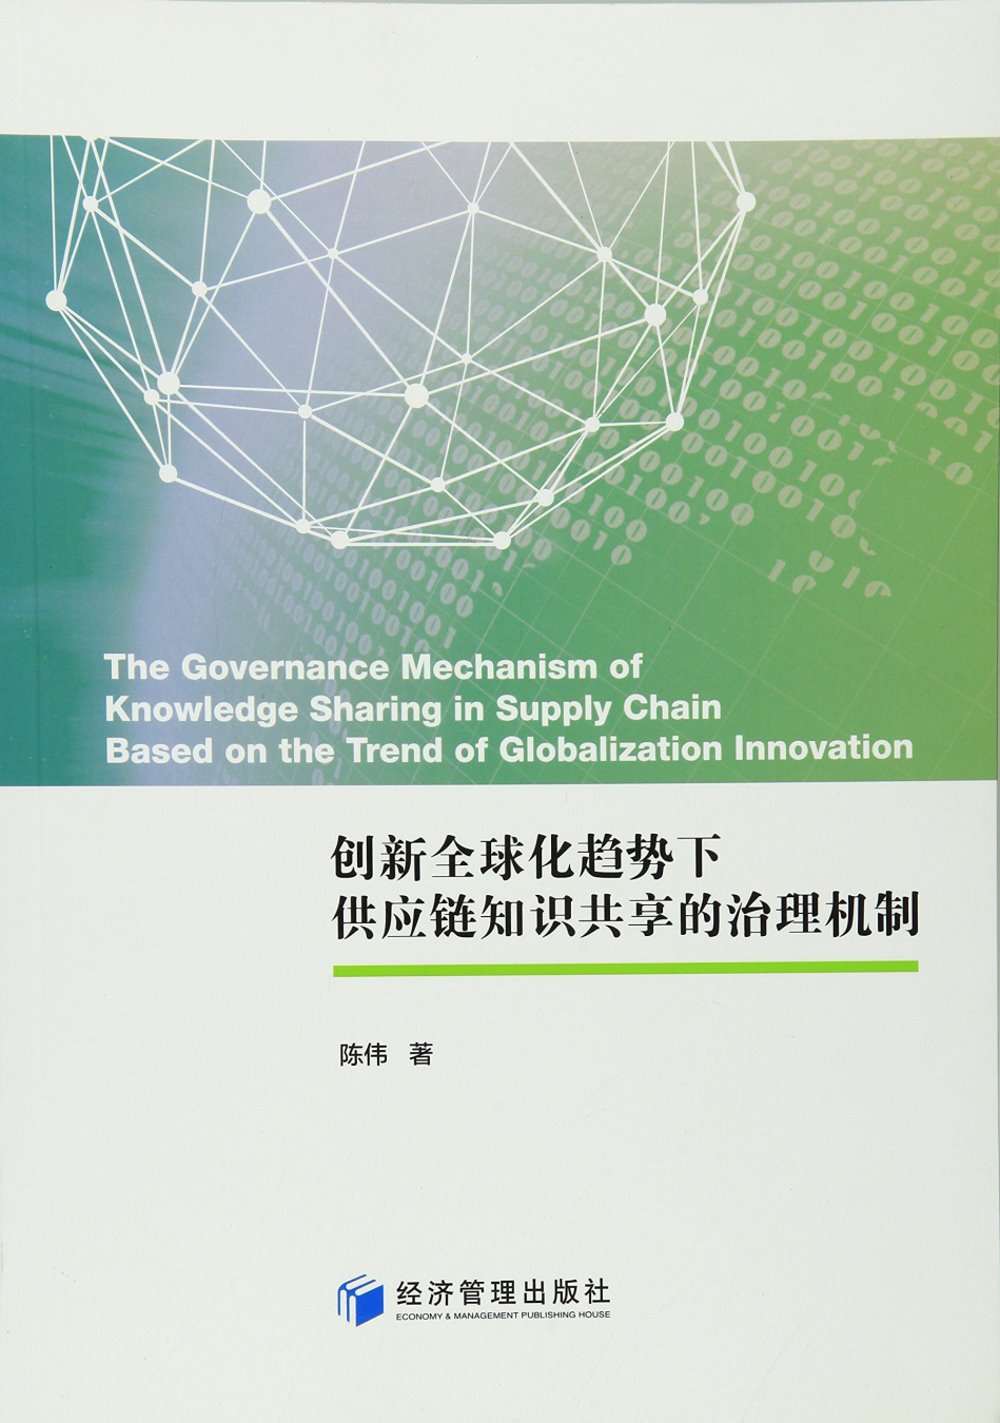 創新全球化趨勢下供應鏈知識共享的治理機制